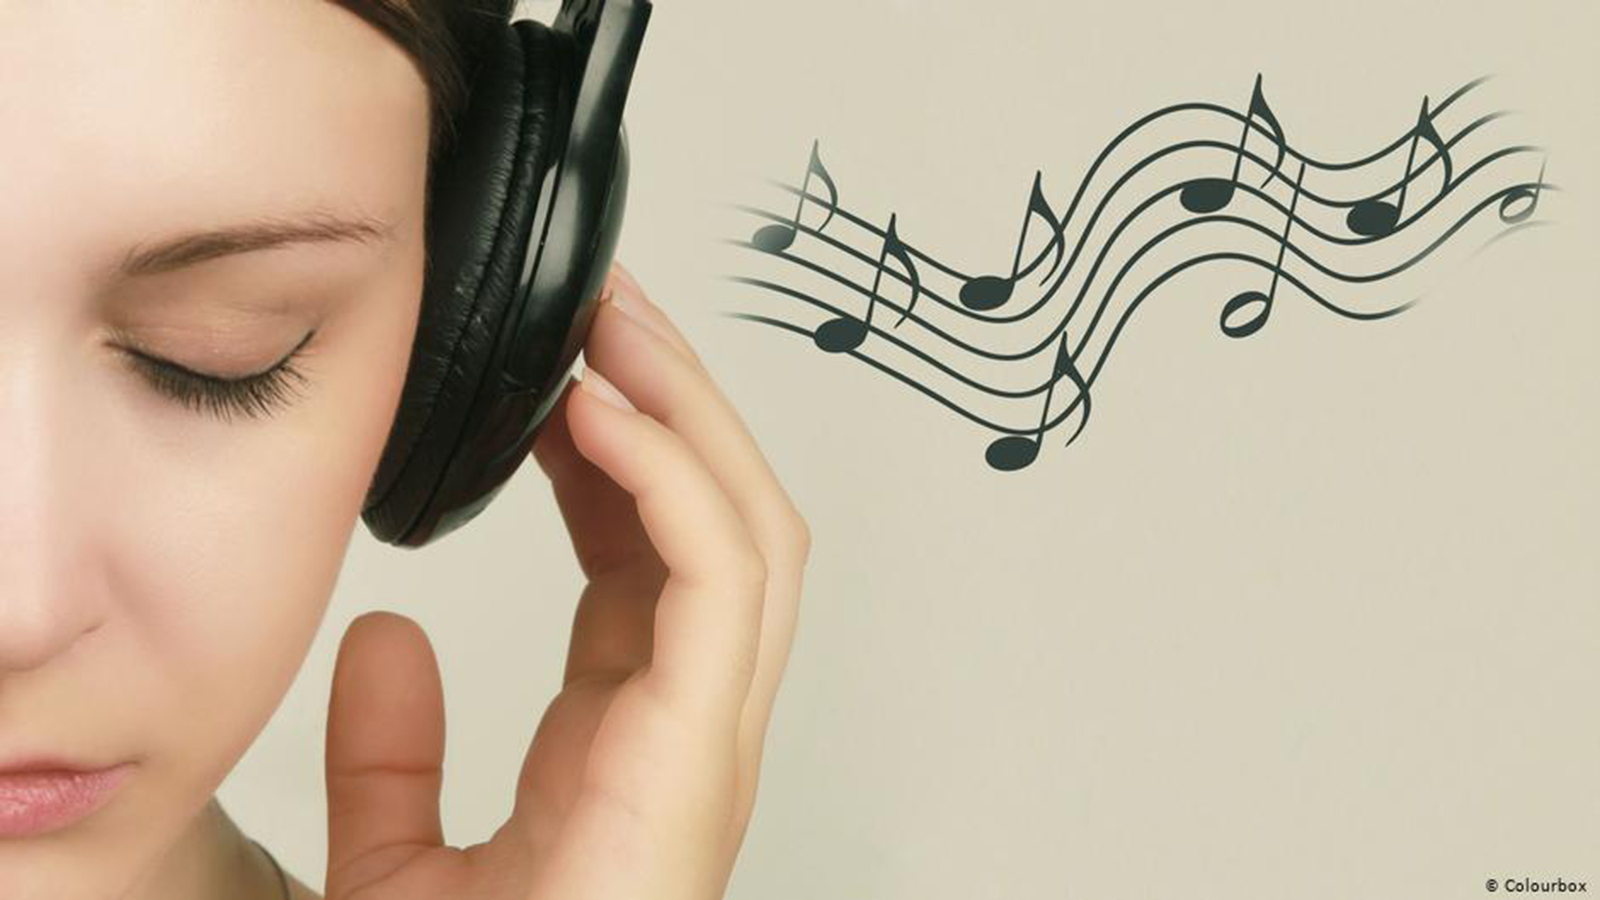 يمكن أن تكون الموسيقى وسيلة فعّالة للتواصل مع المشاعر السلبية غير المريحة